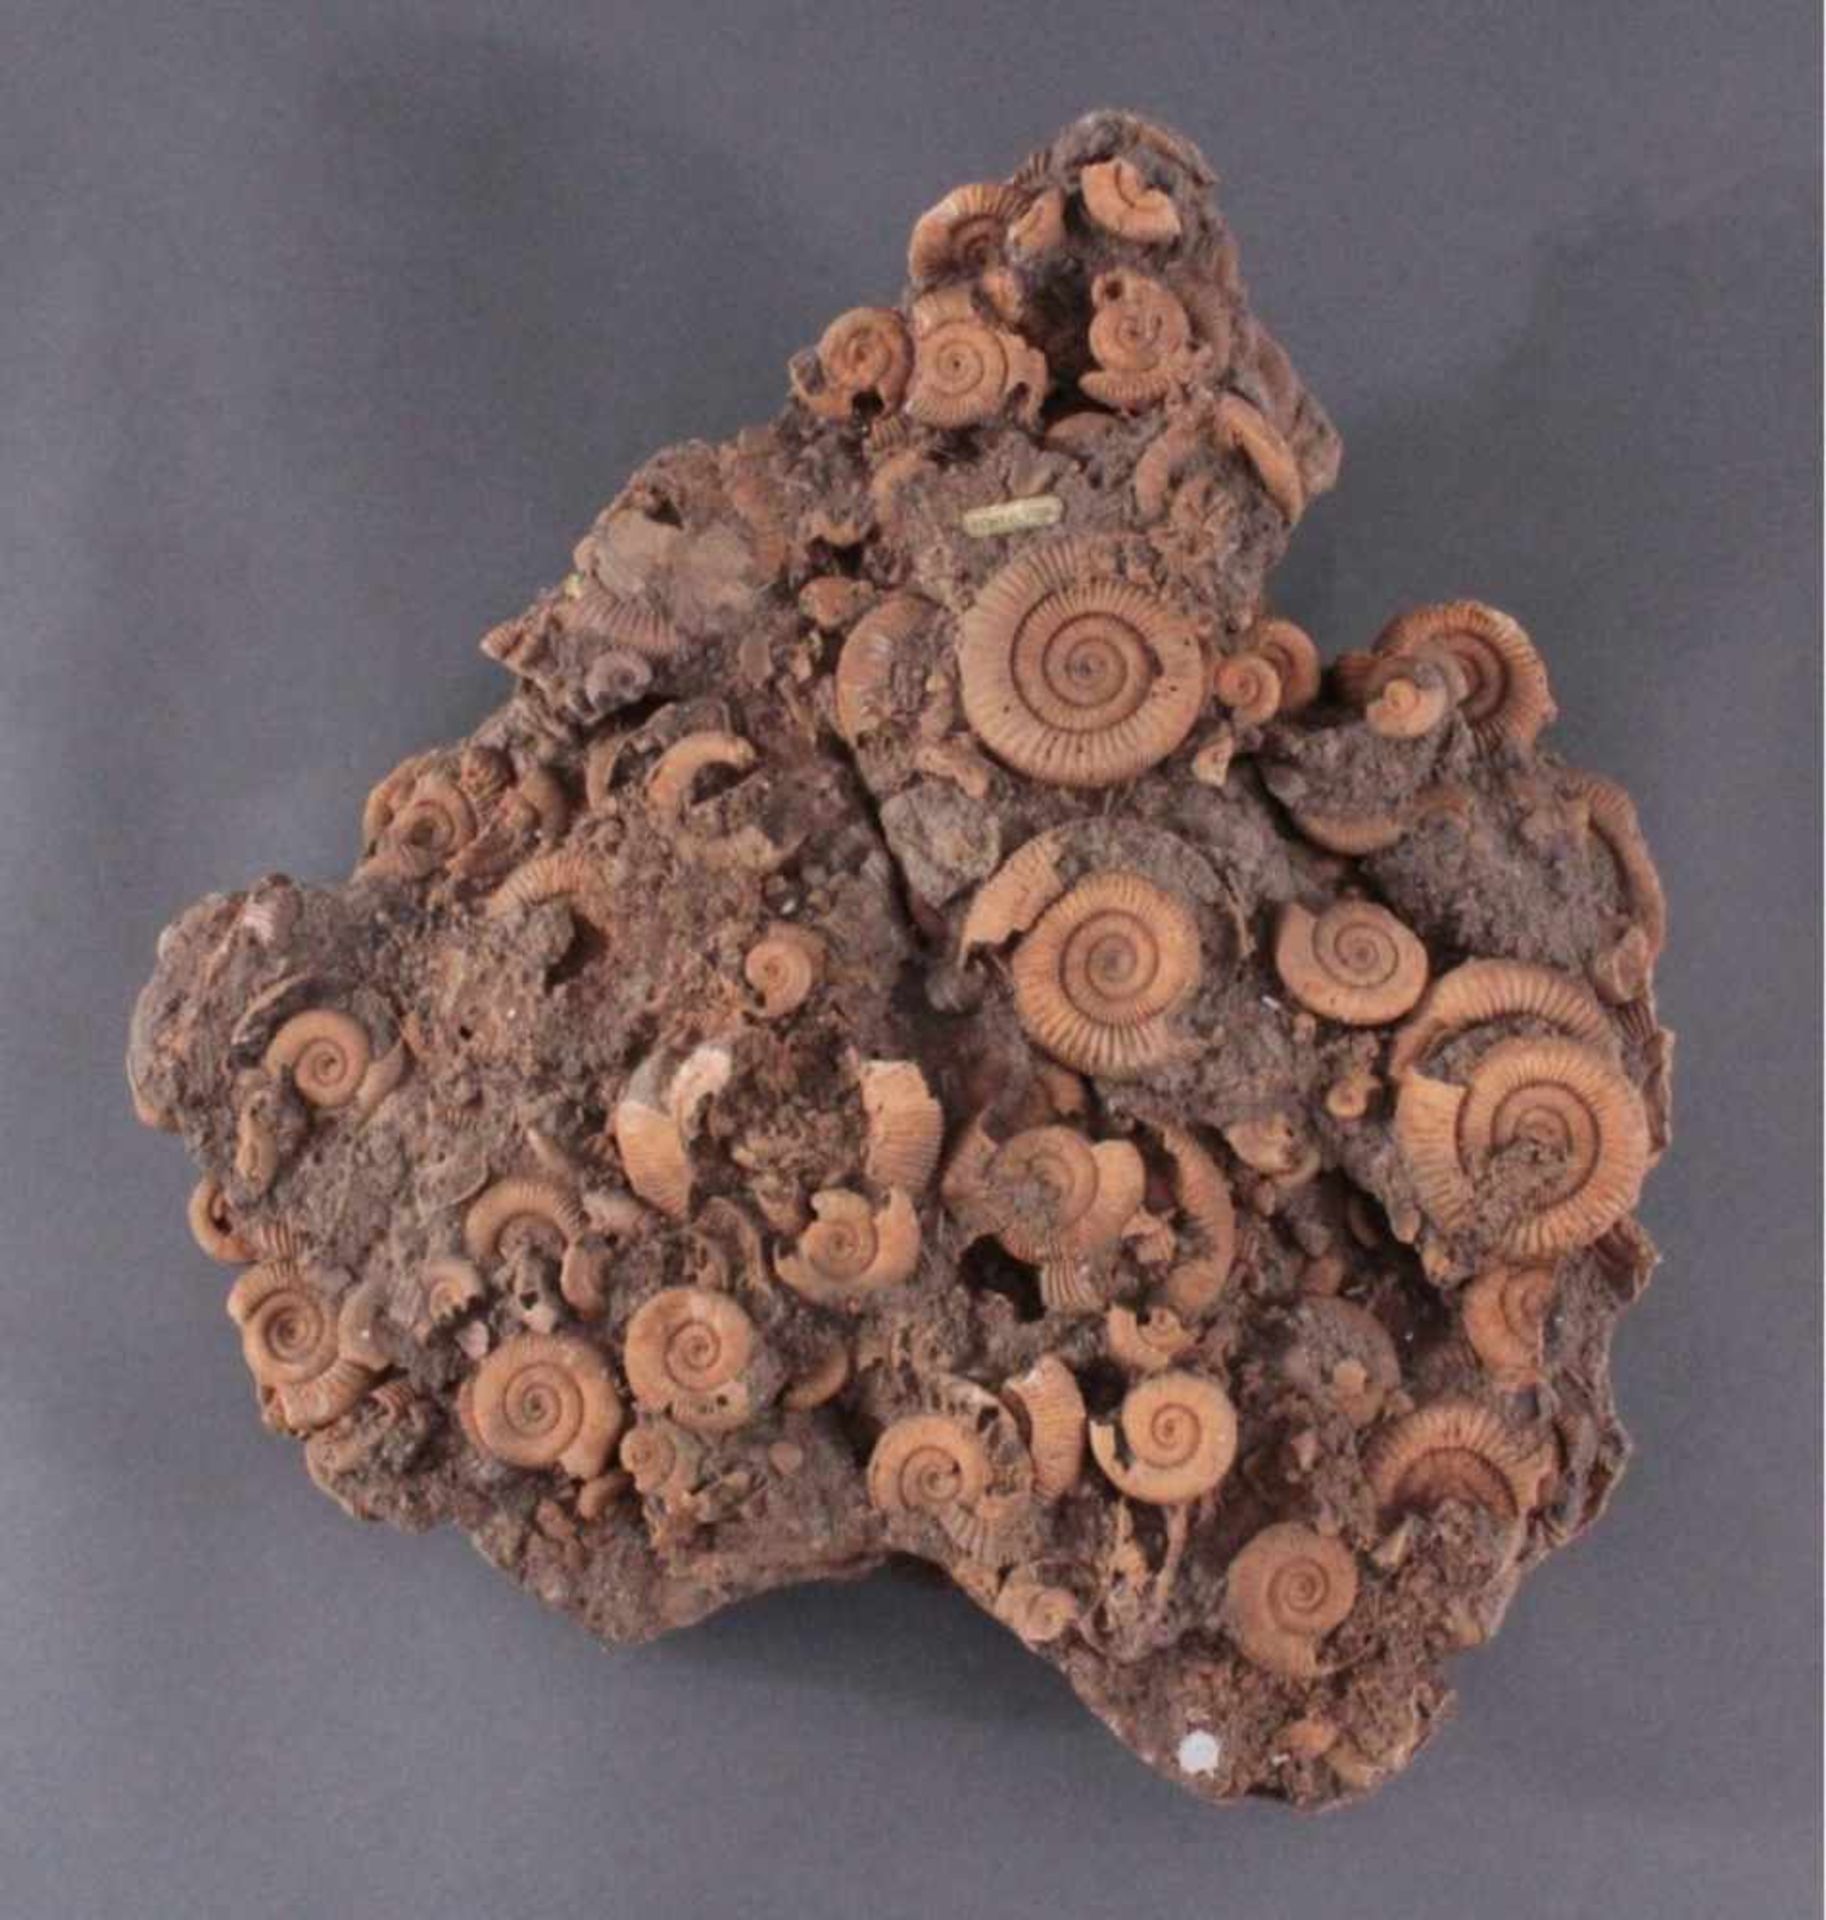 Großes Fossil mit AmmonitenActylioceras athleticum Ammonit Fossilien-Brocken, ca. 10 x48 x 42 cm,